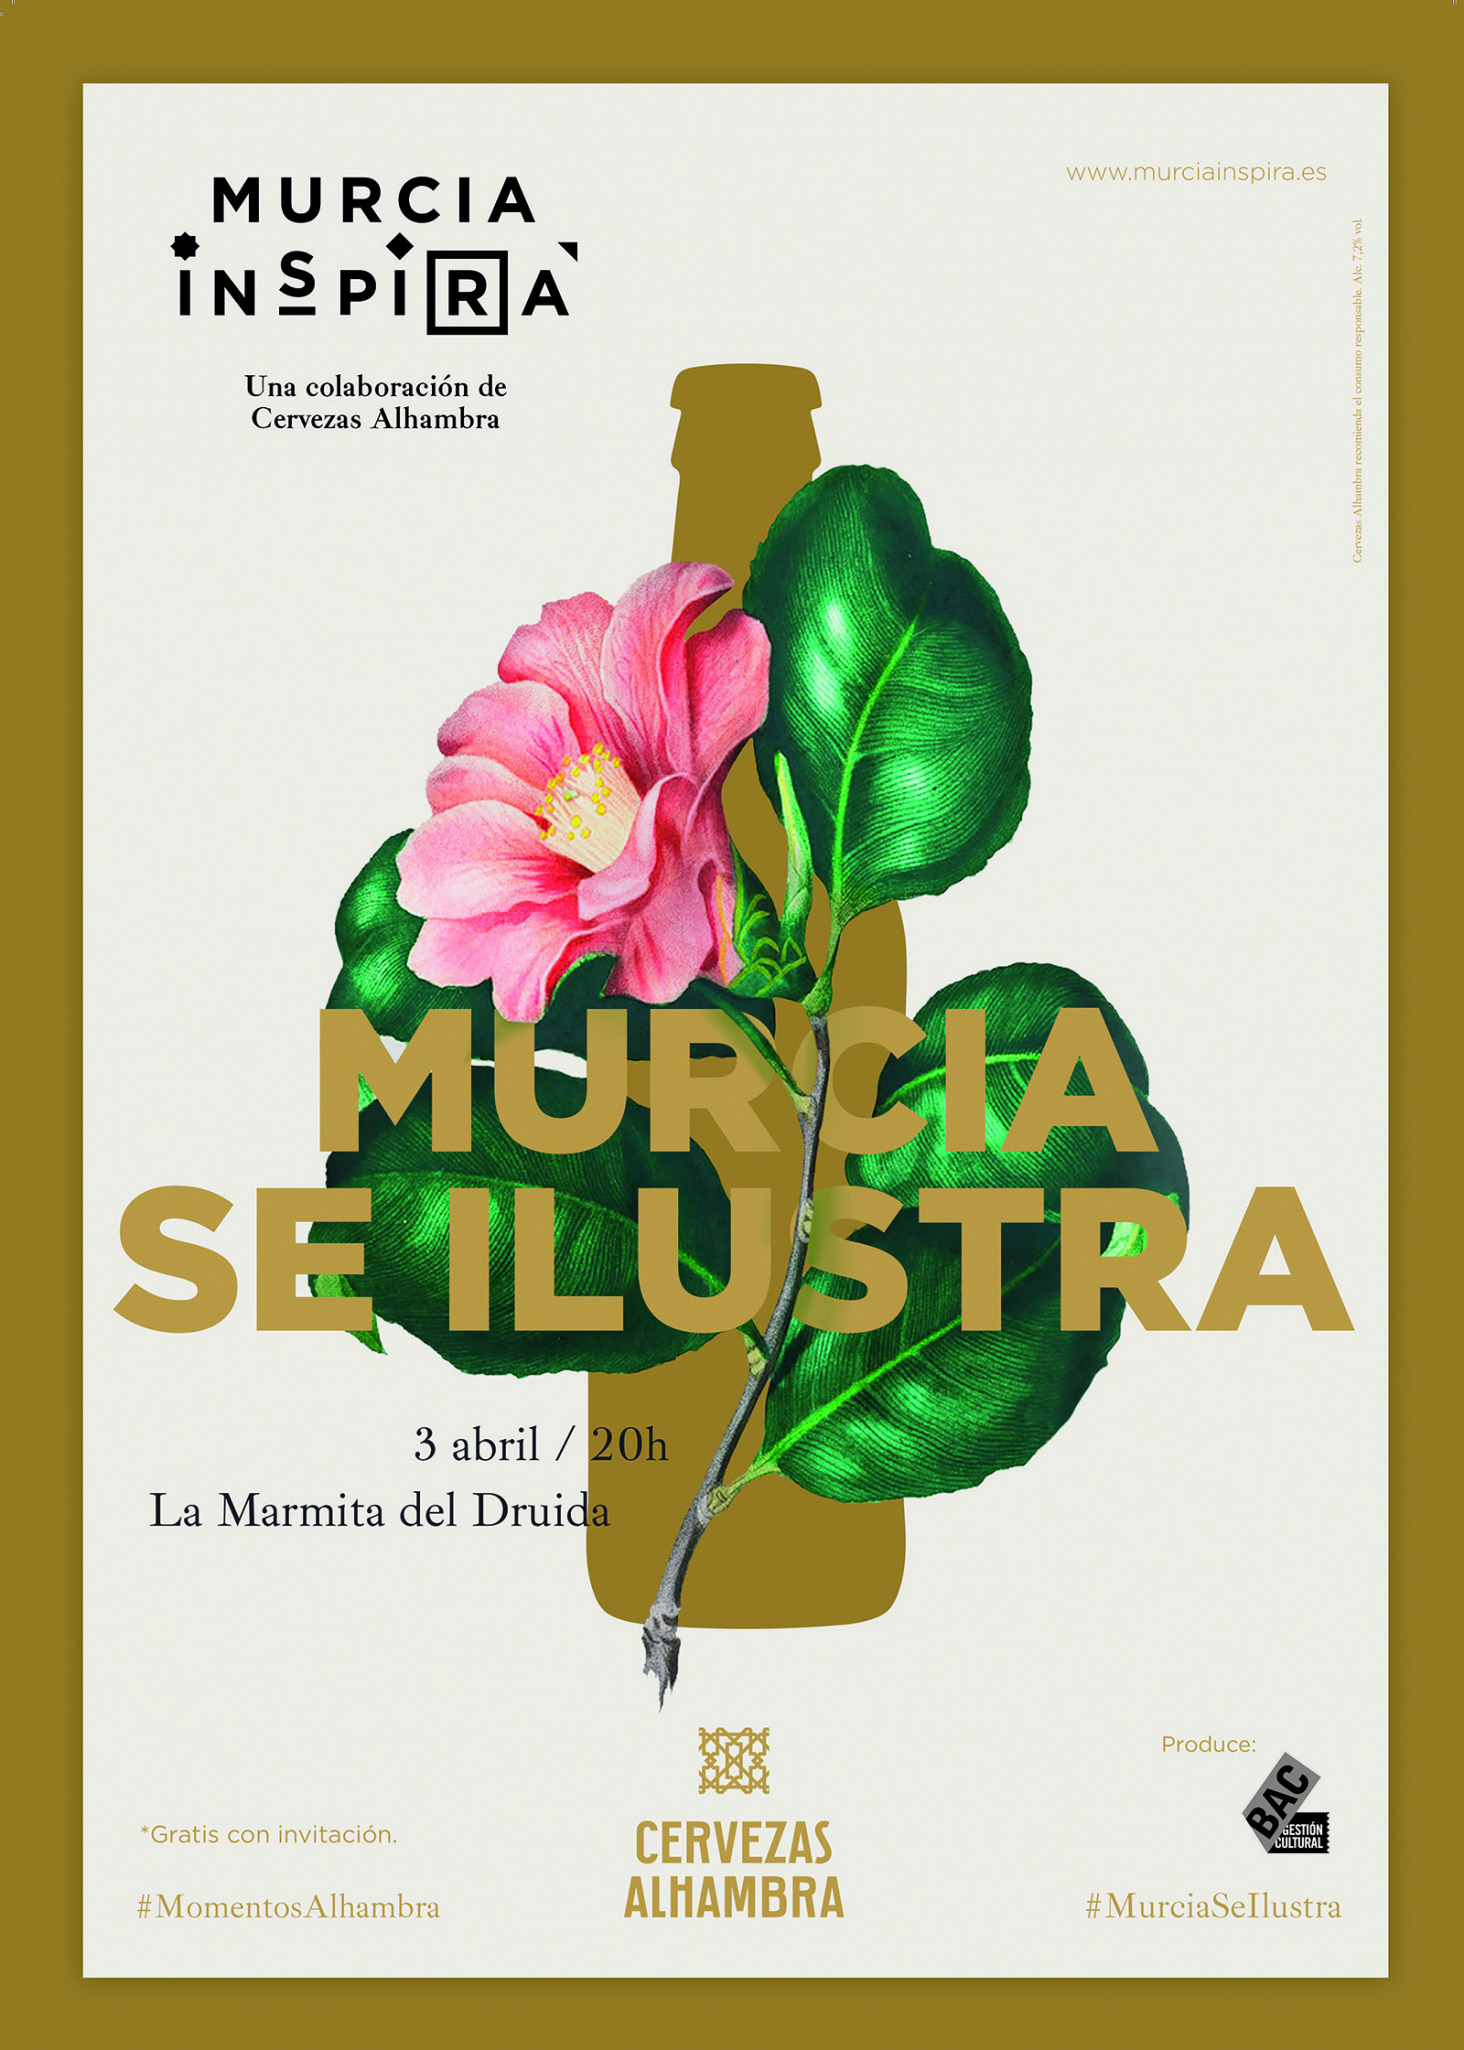 El ciclo Murcia Se Ilustra de Murcia Inspira vuelve con una exposición que aúna tradición y vanguardia